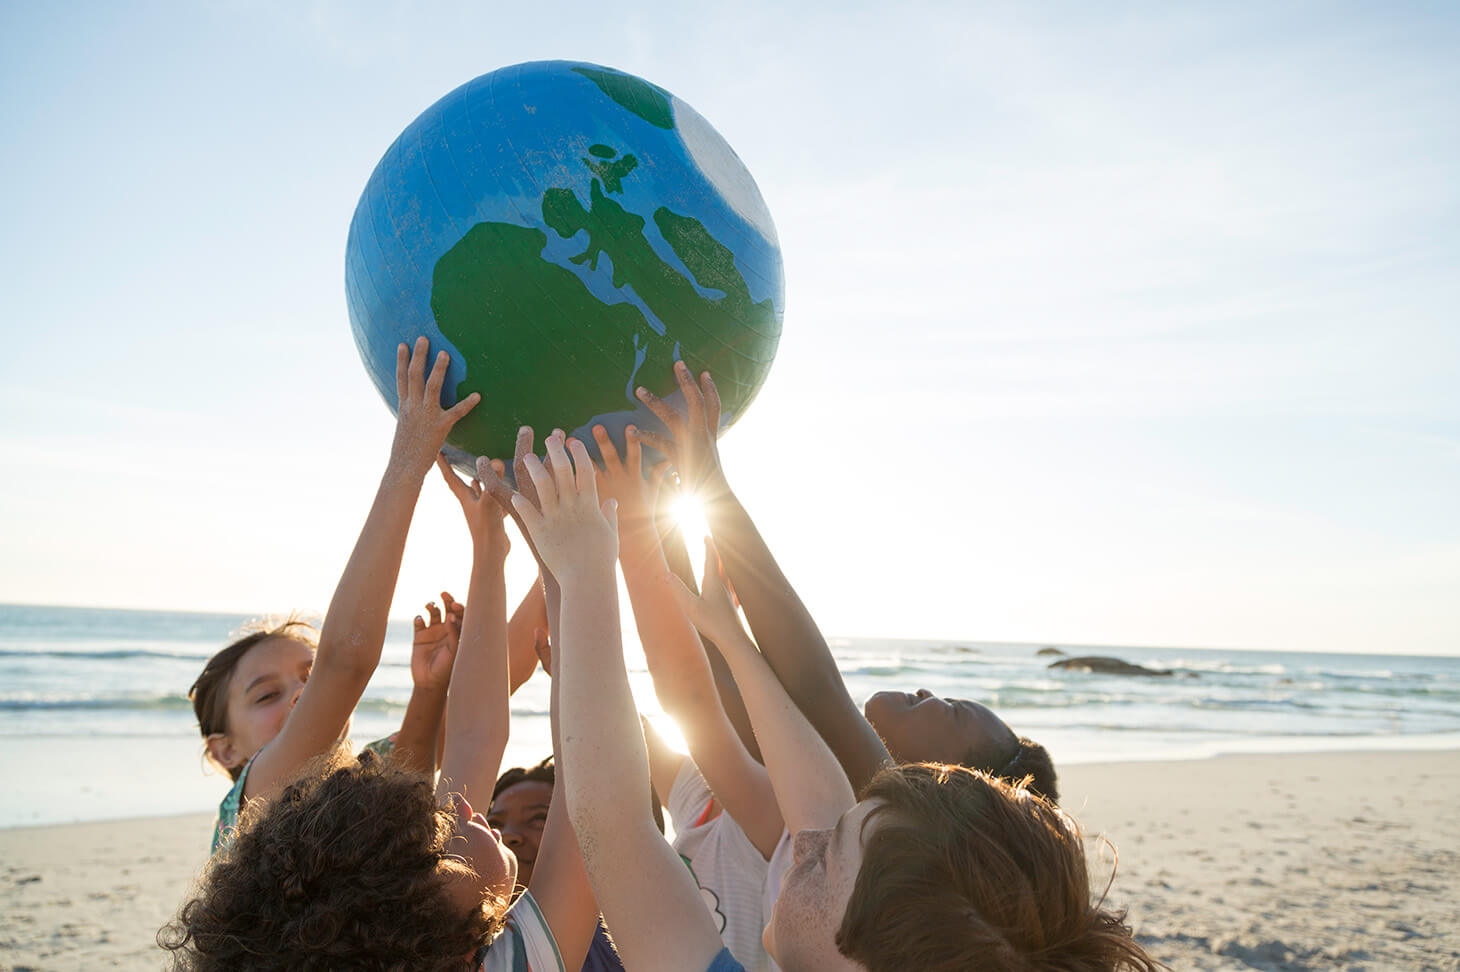 5 Kinder halten gemeinsam am Sandstrand eine Weltkugel, durch ihre Hände scheint die Sonne